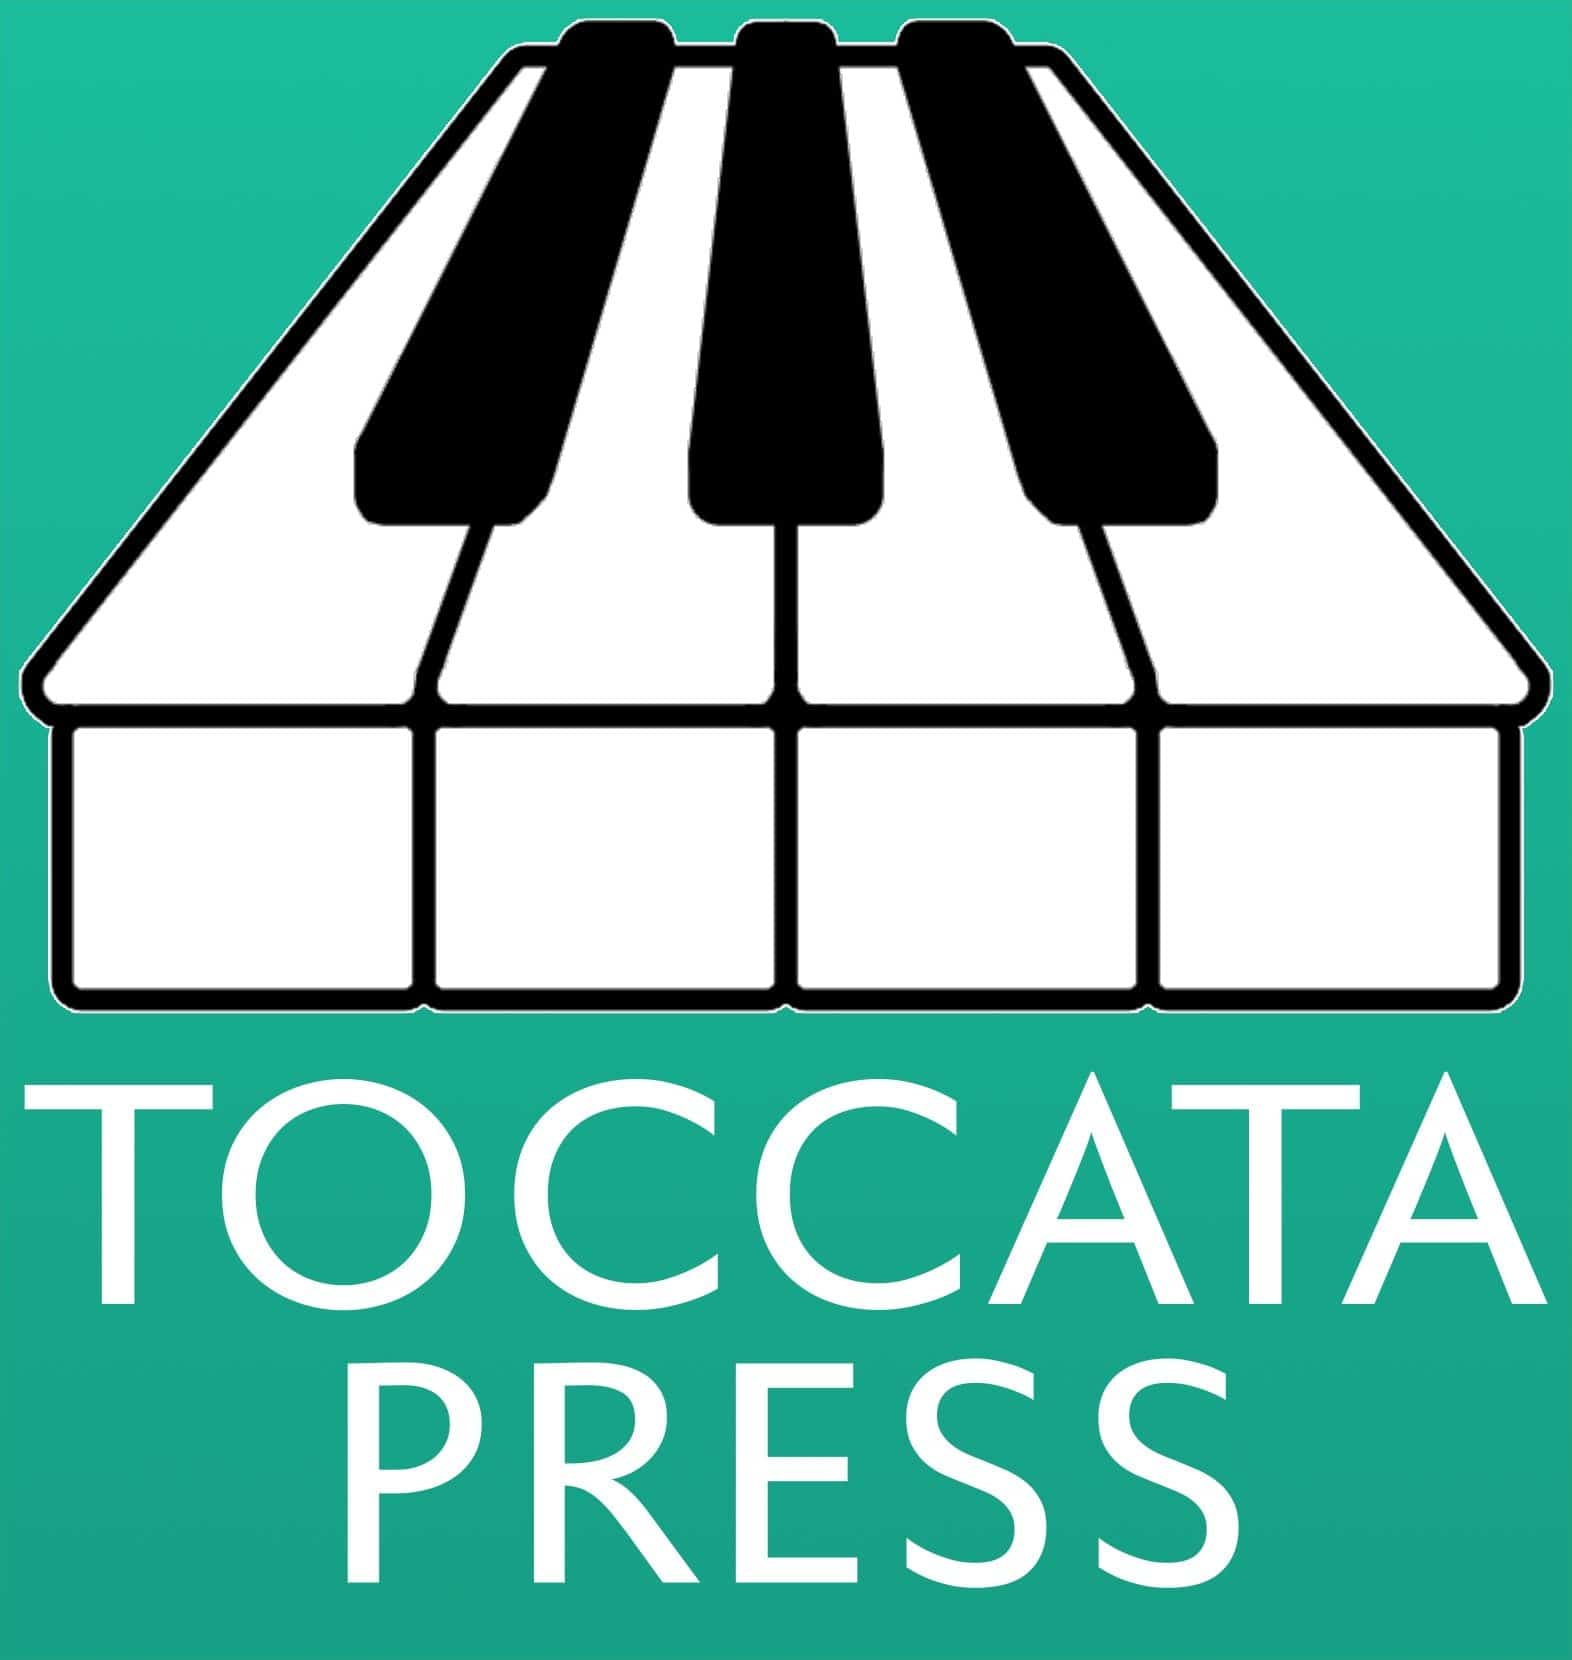 Toccata Press